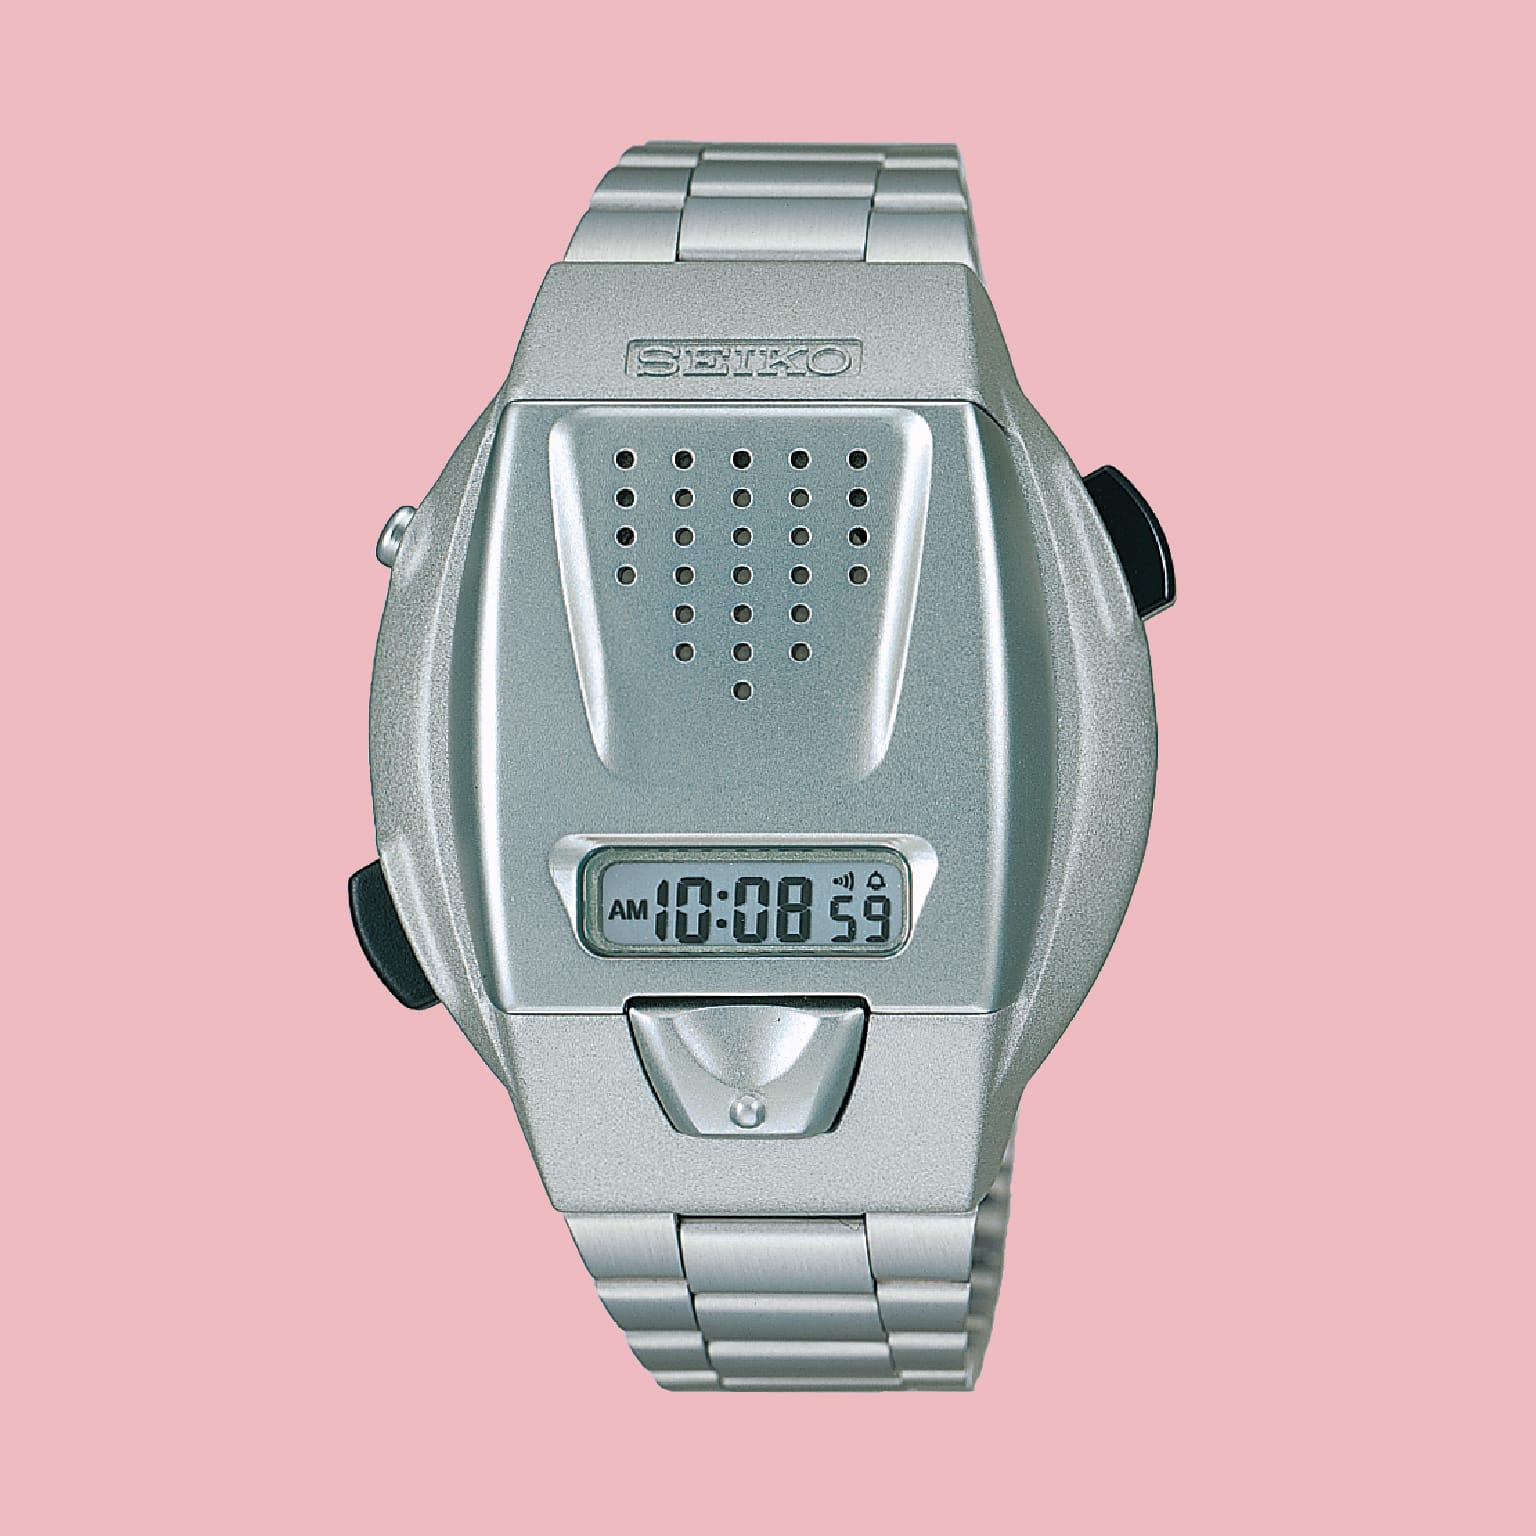 1998 Digital talking watch